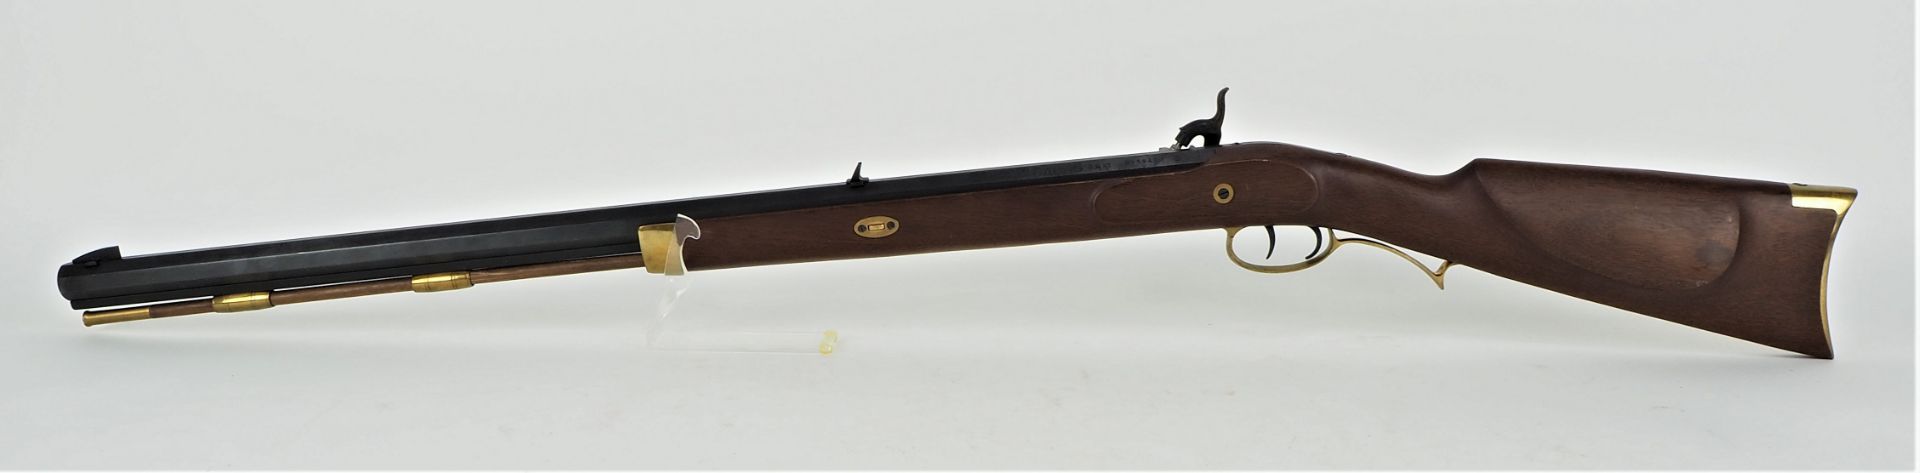 Vorderlader-Perkussionsgewehr - Hawken Target Rifle Kal. 45 - Bild 5 aus 6